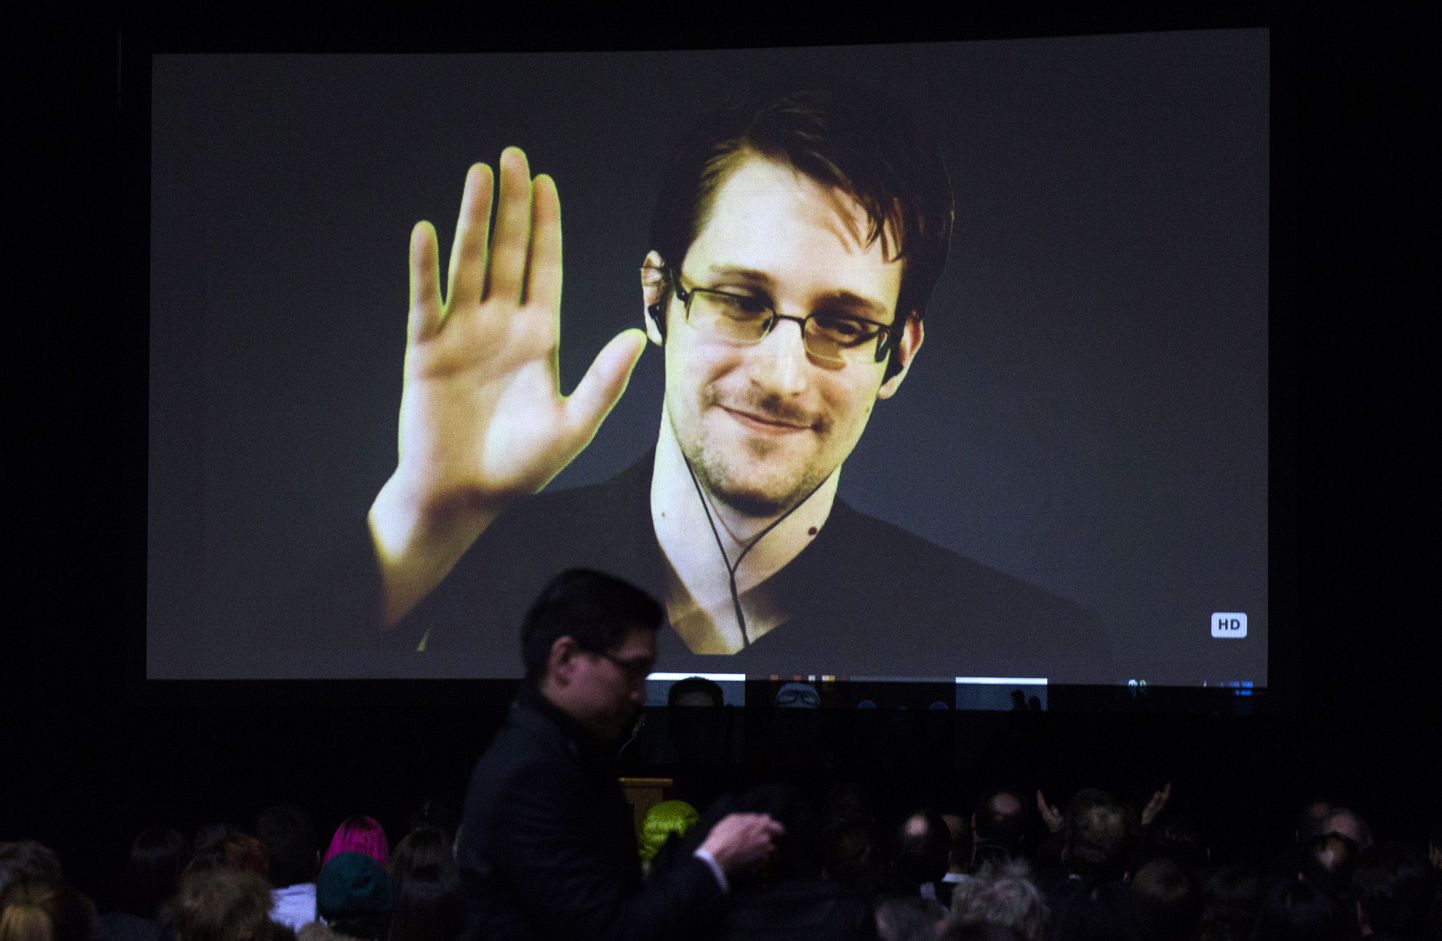 Бывший сотрудник ЦРУ Эдвард Сноуден готов вернуться в США при условии гарантии беспристрастного суда над ним.